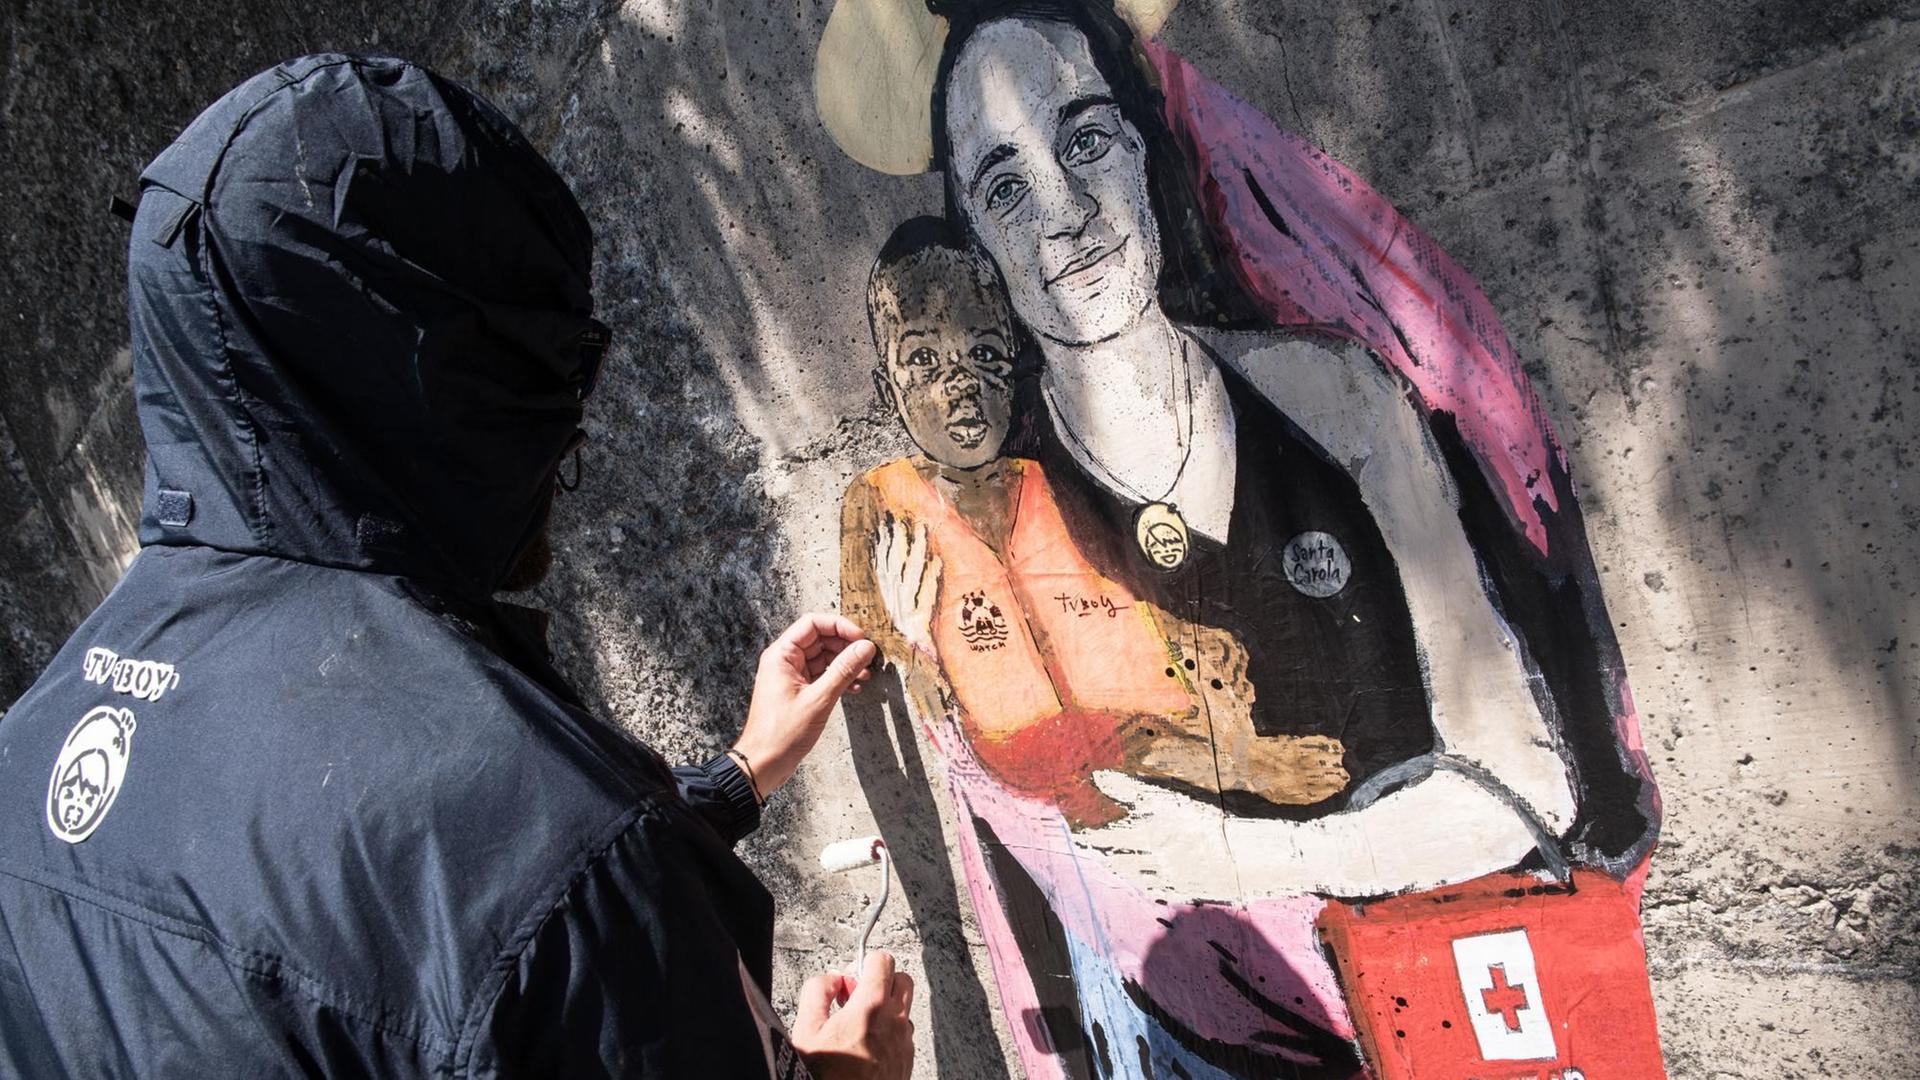 Der Street-Artist TVBOY malt sein Graffiti von Carola Rackete als Marienfigur an eine Wand in der sizilianischen Hafenstadt Taormina.